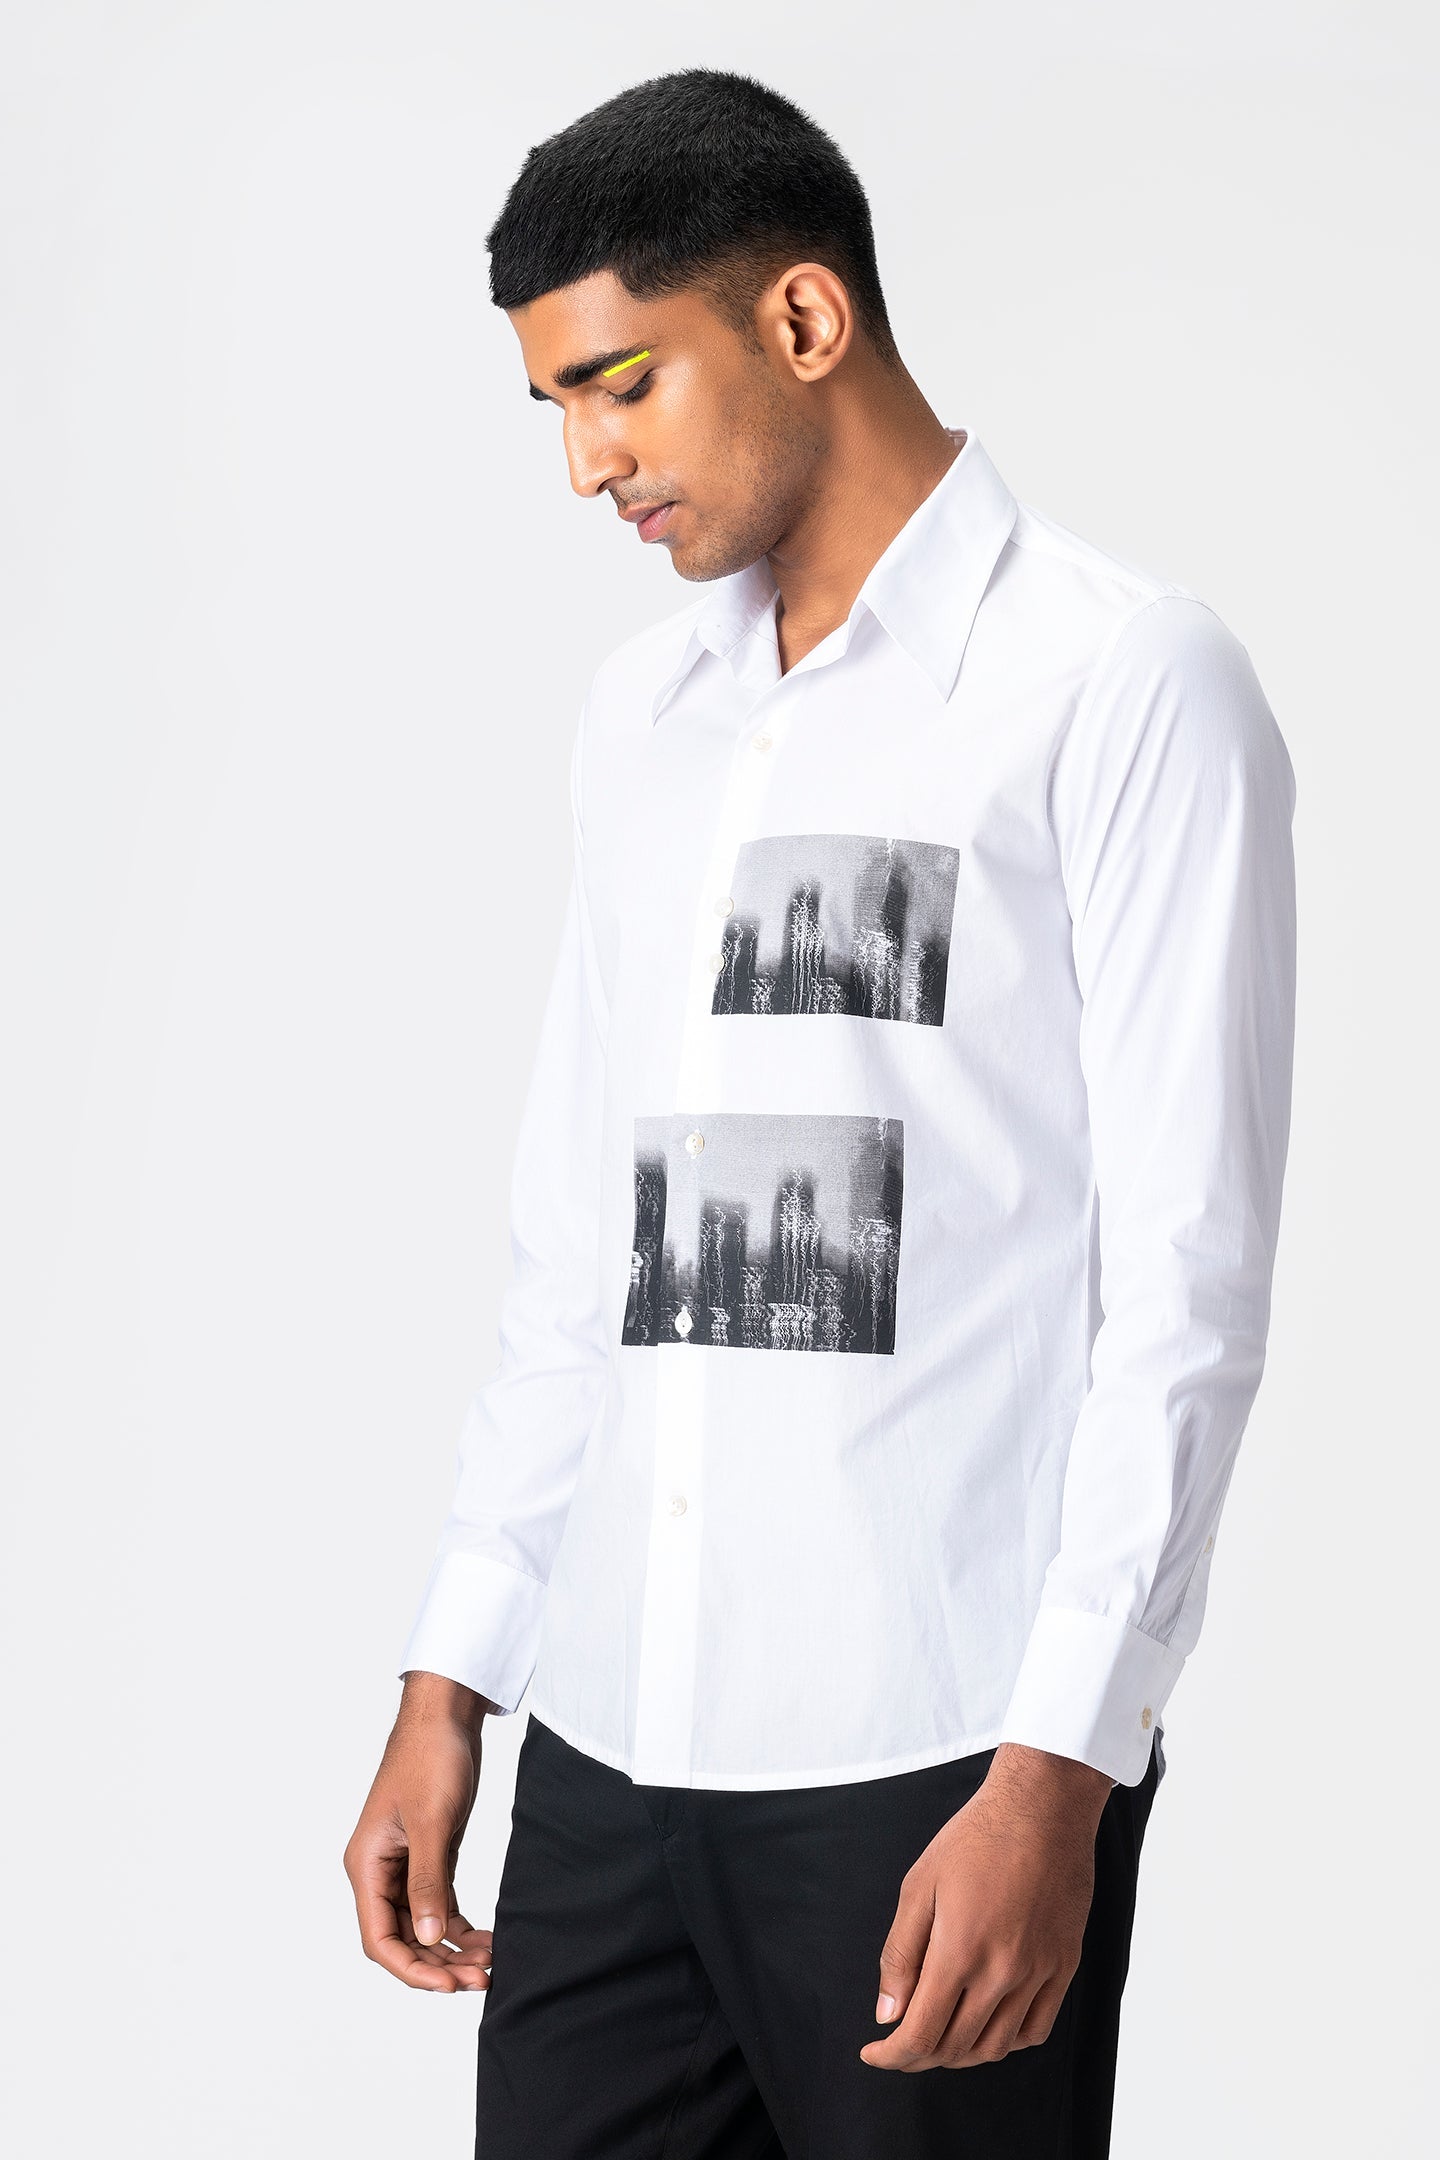 printed-full-sleeved-shirt - Genes online store 2020